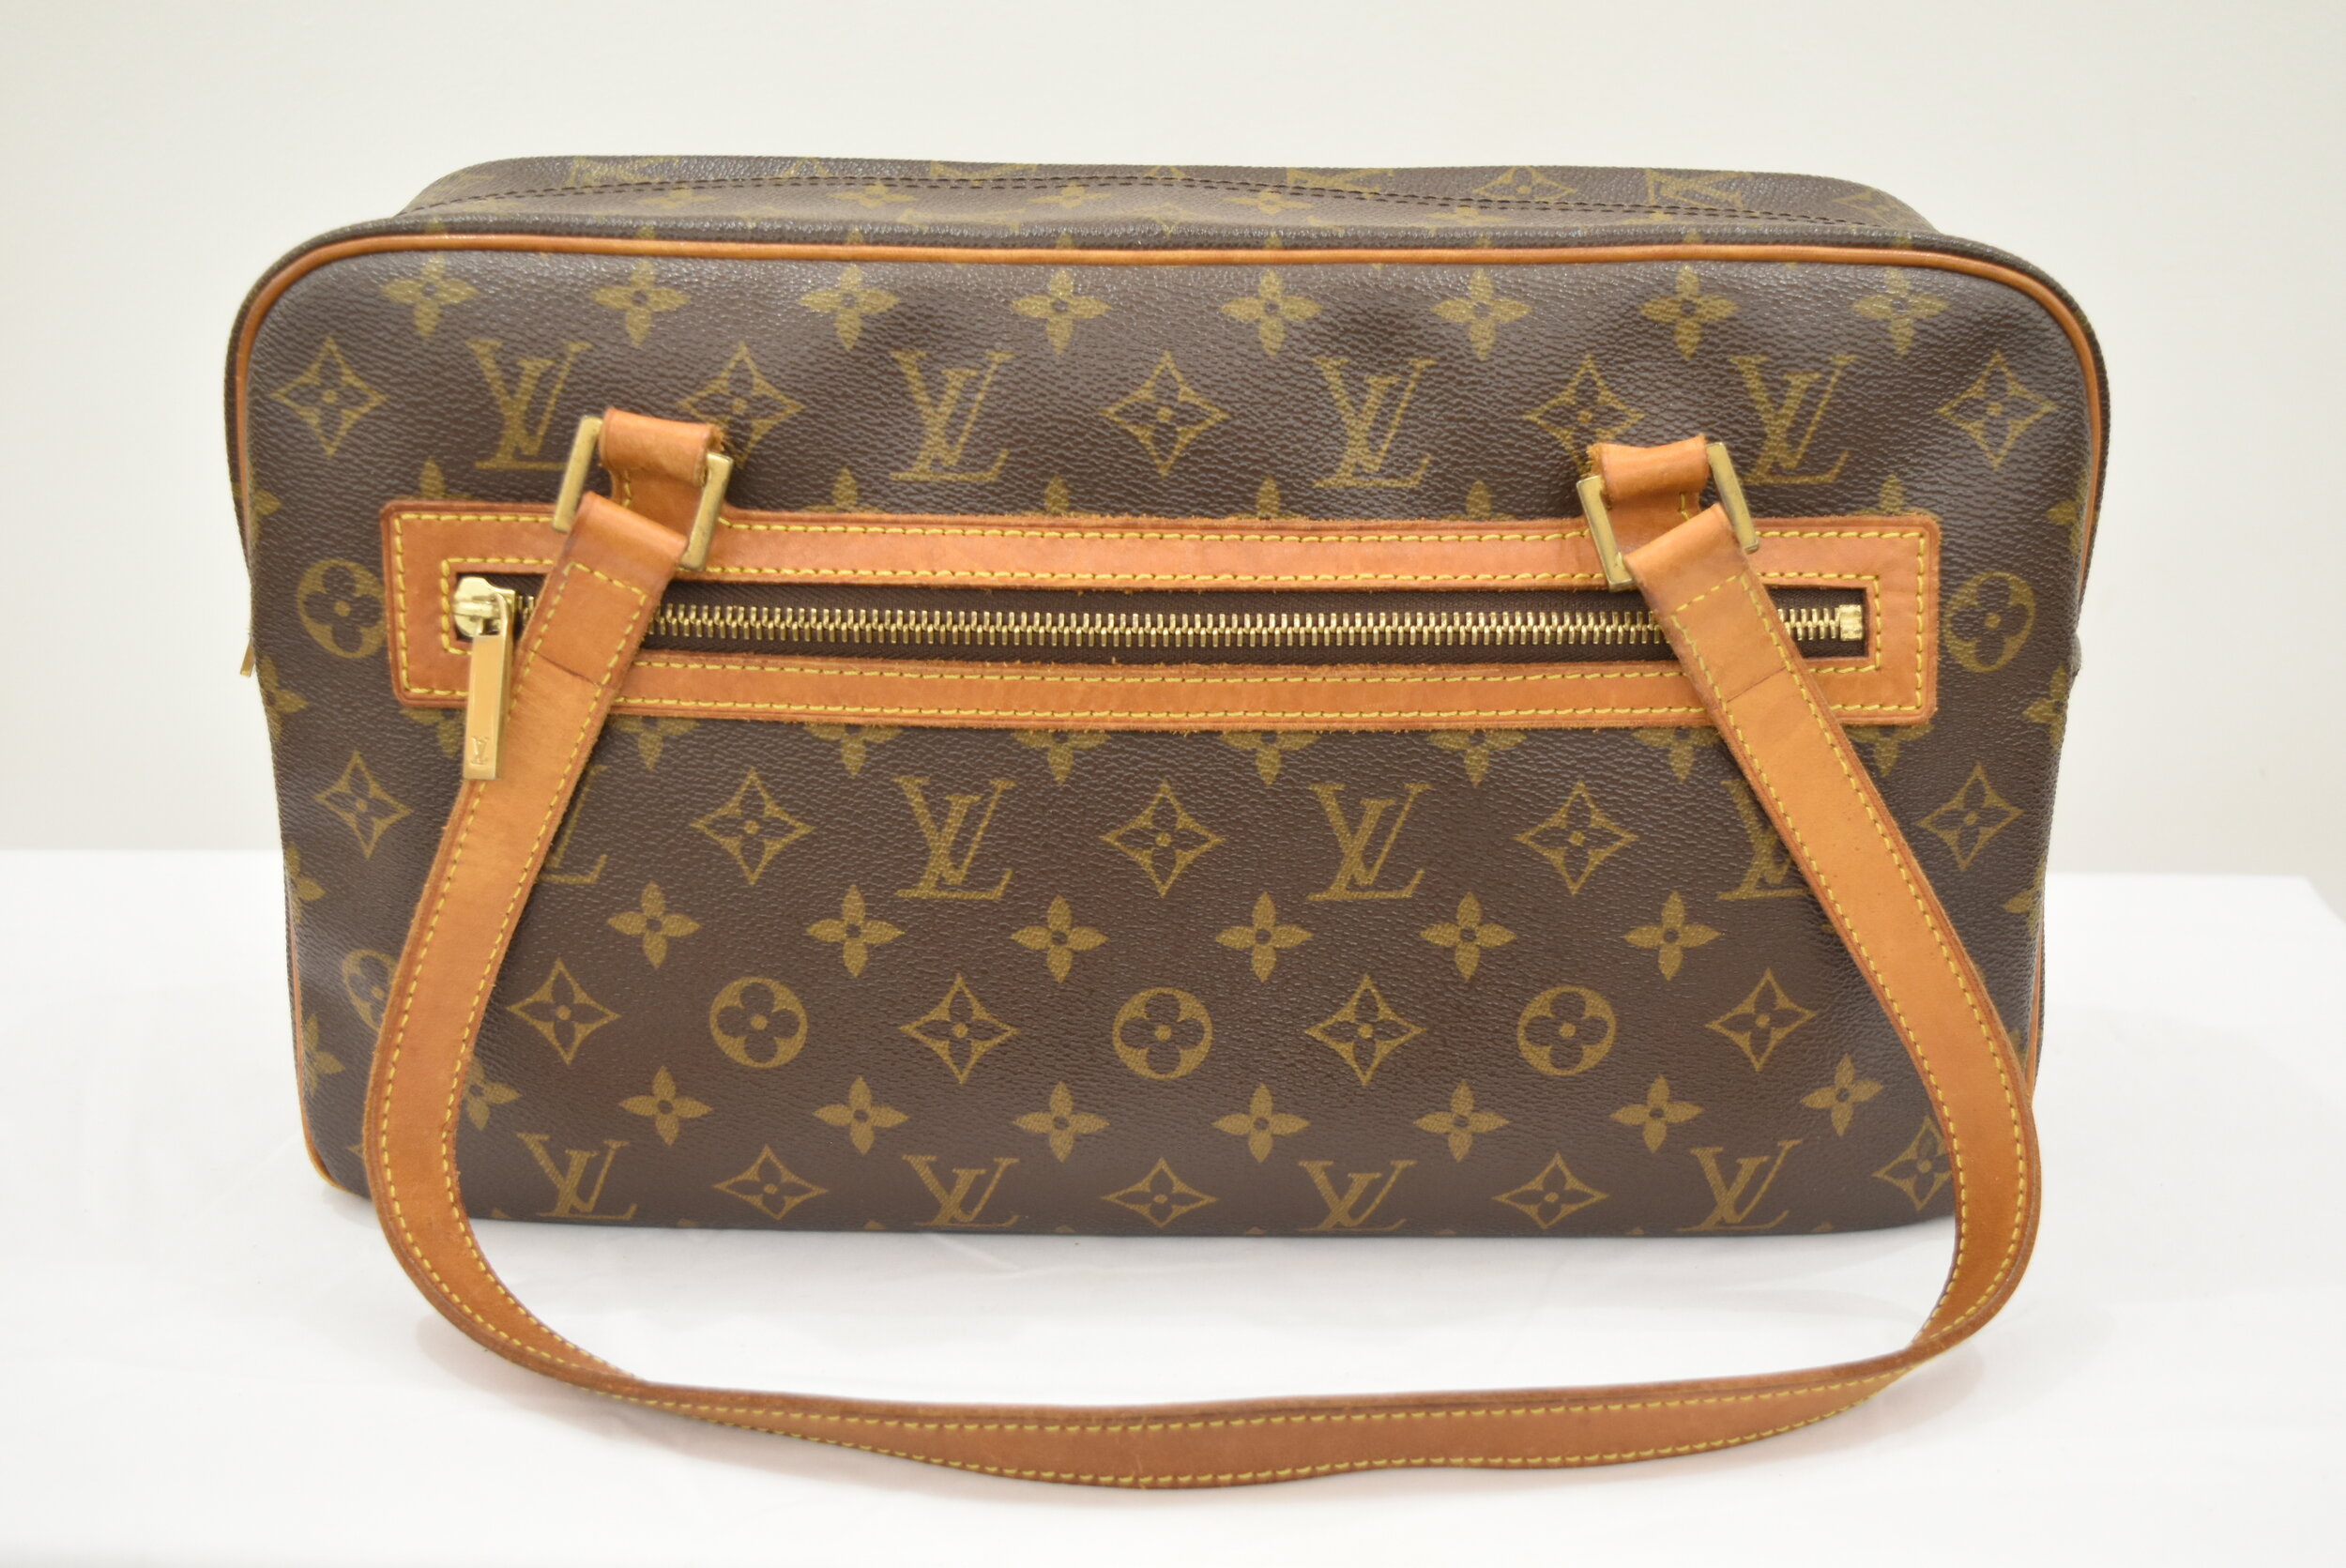 Louis Vuitton Cite Handbag Monogram Canvas GM - ShopStyle Shoulder Bags